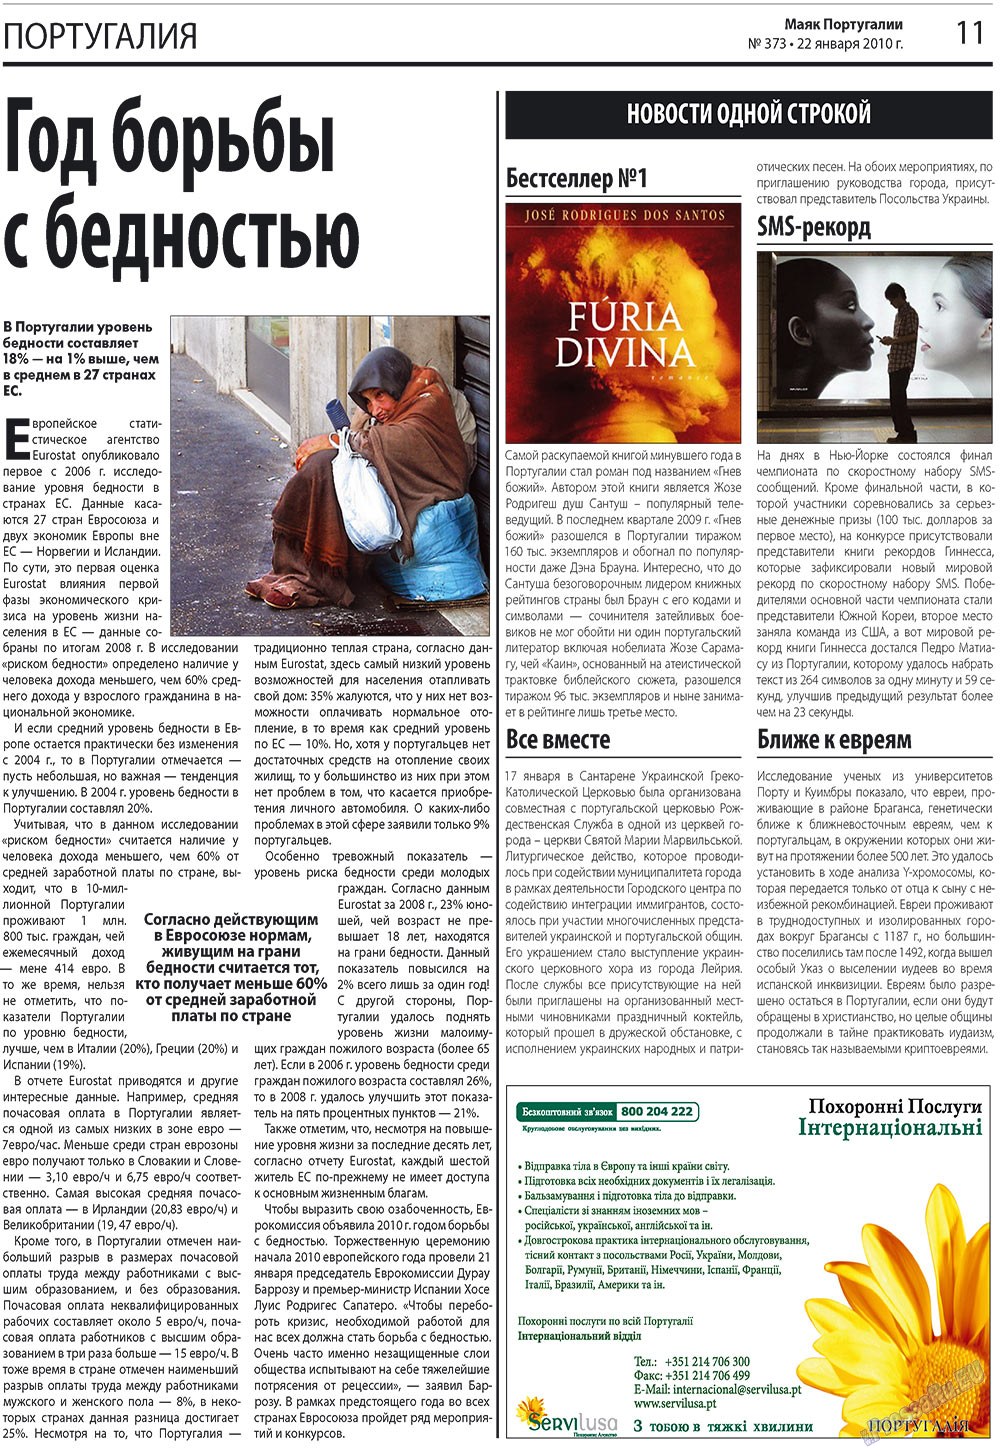 Маяк Португалии (газета). 2010 год, номер 373, стр. 11